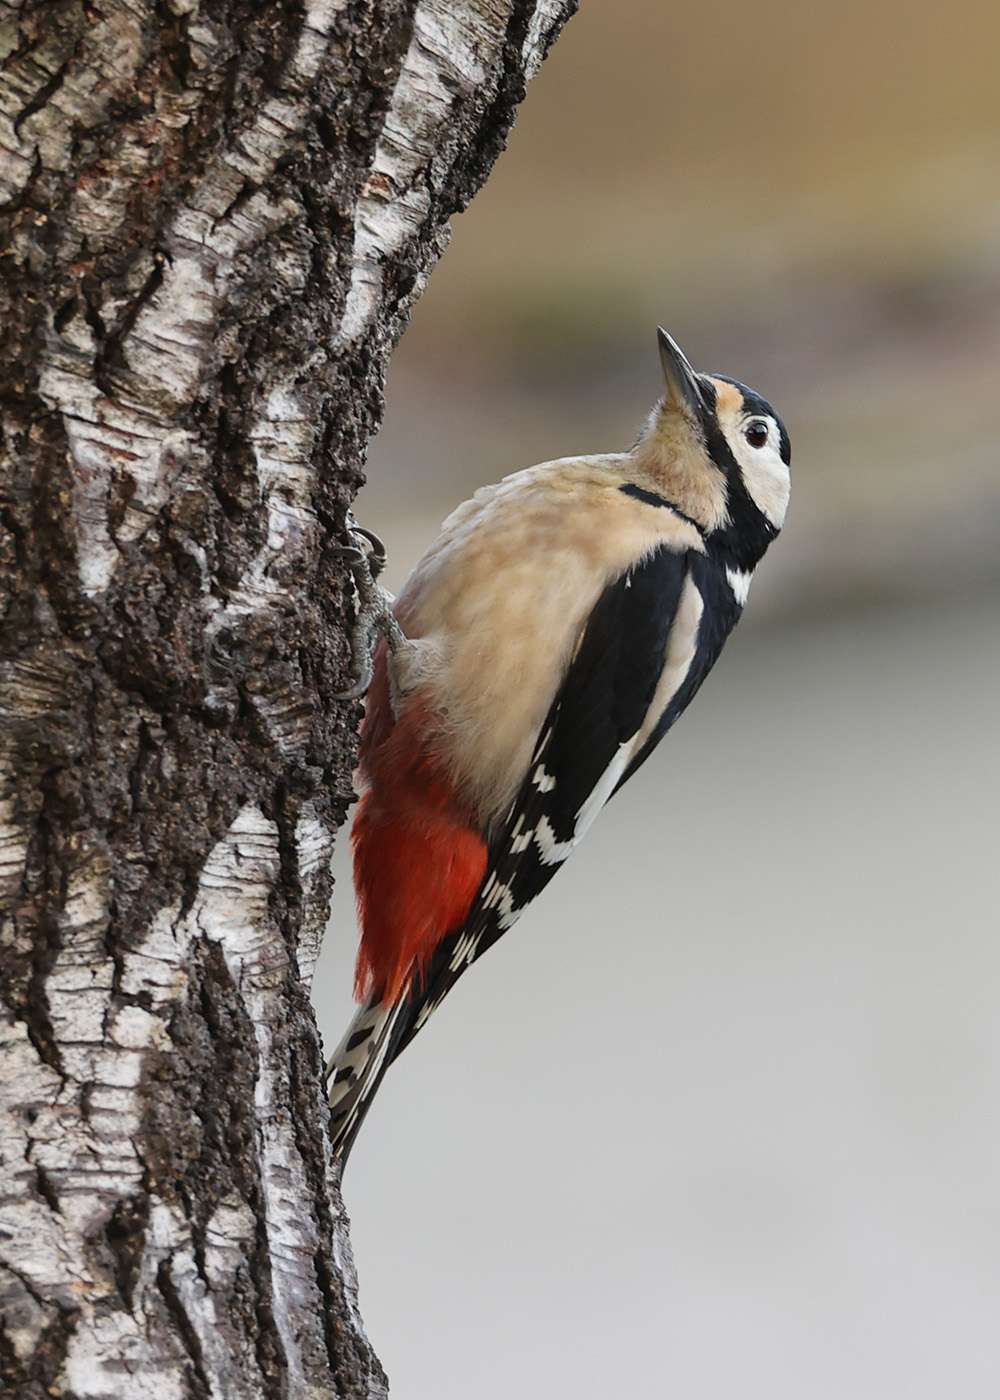 Great Spotted Woodpecker by Steve Hopper at Haldon